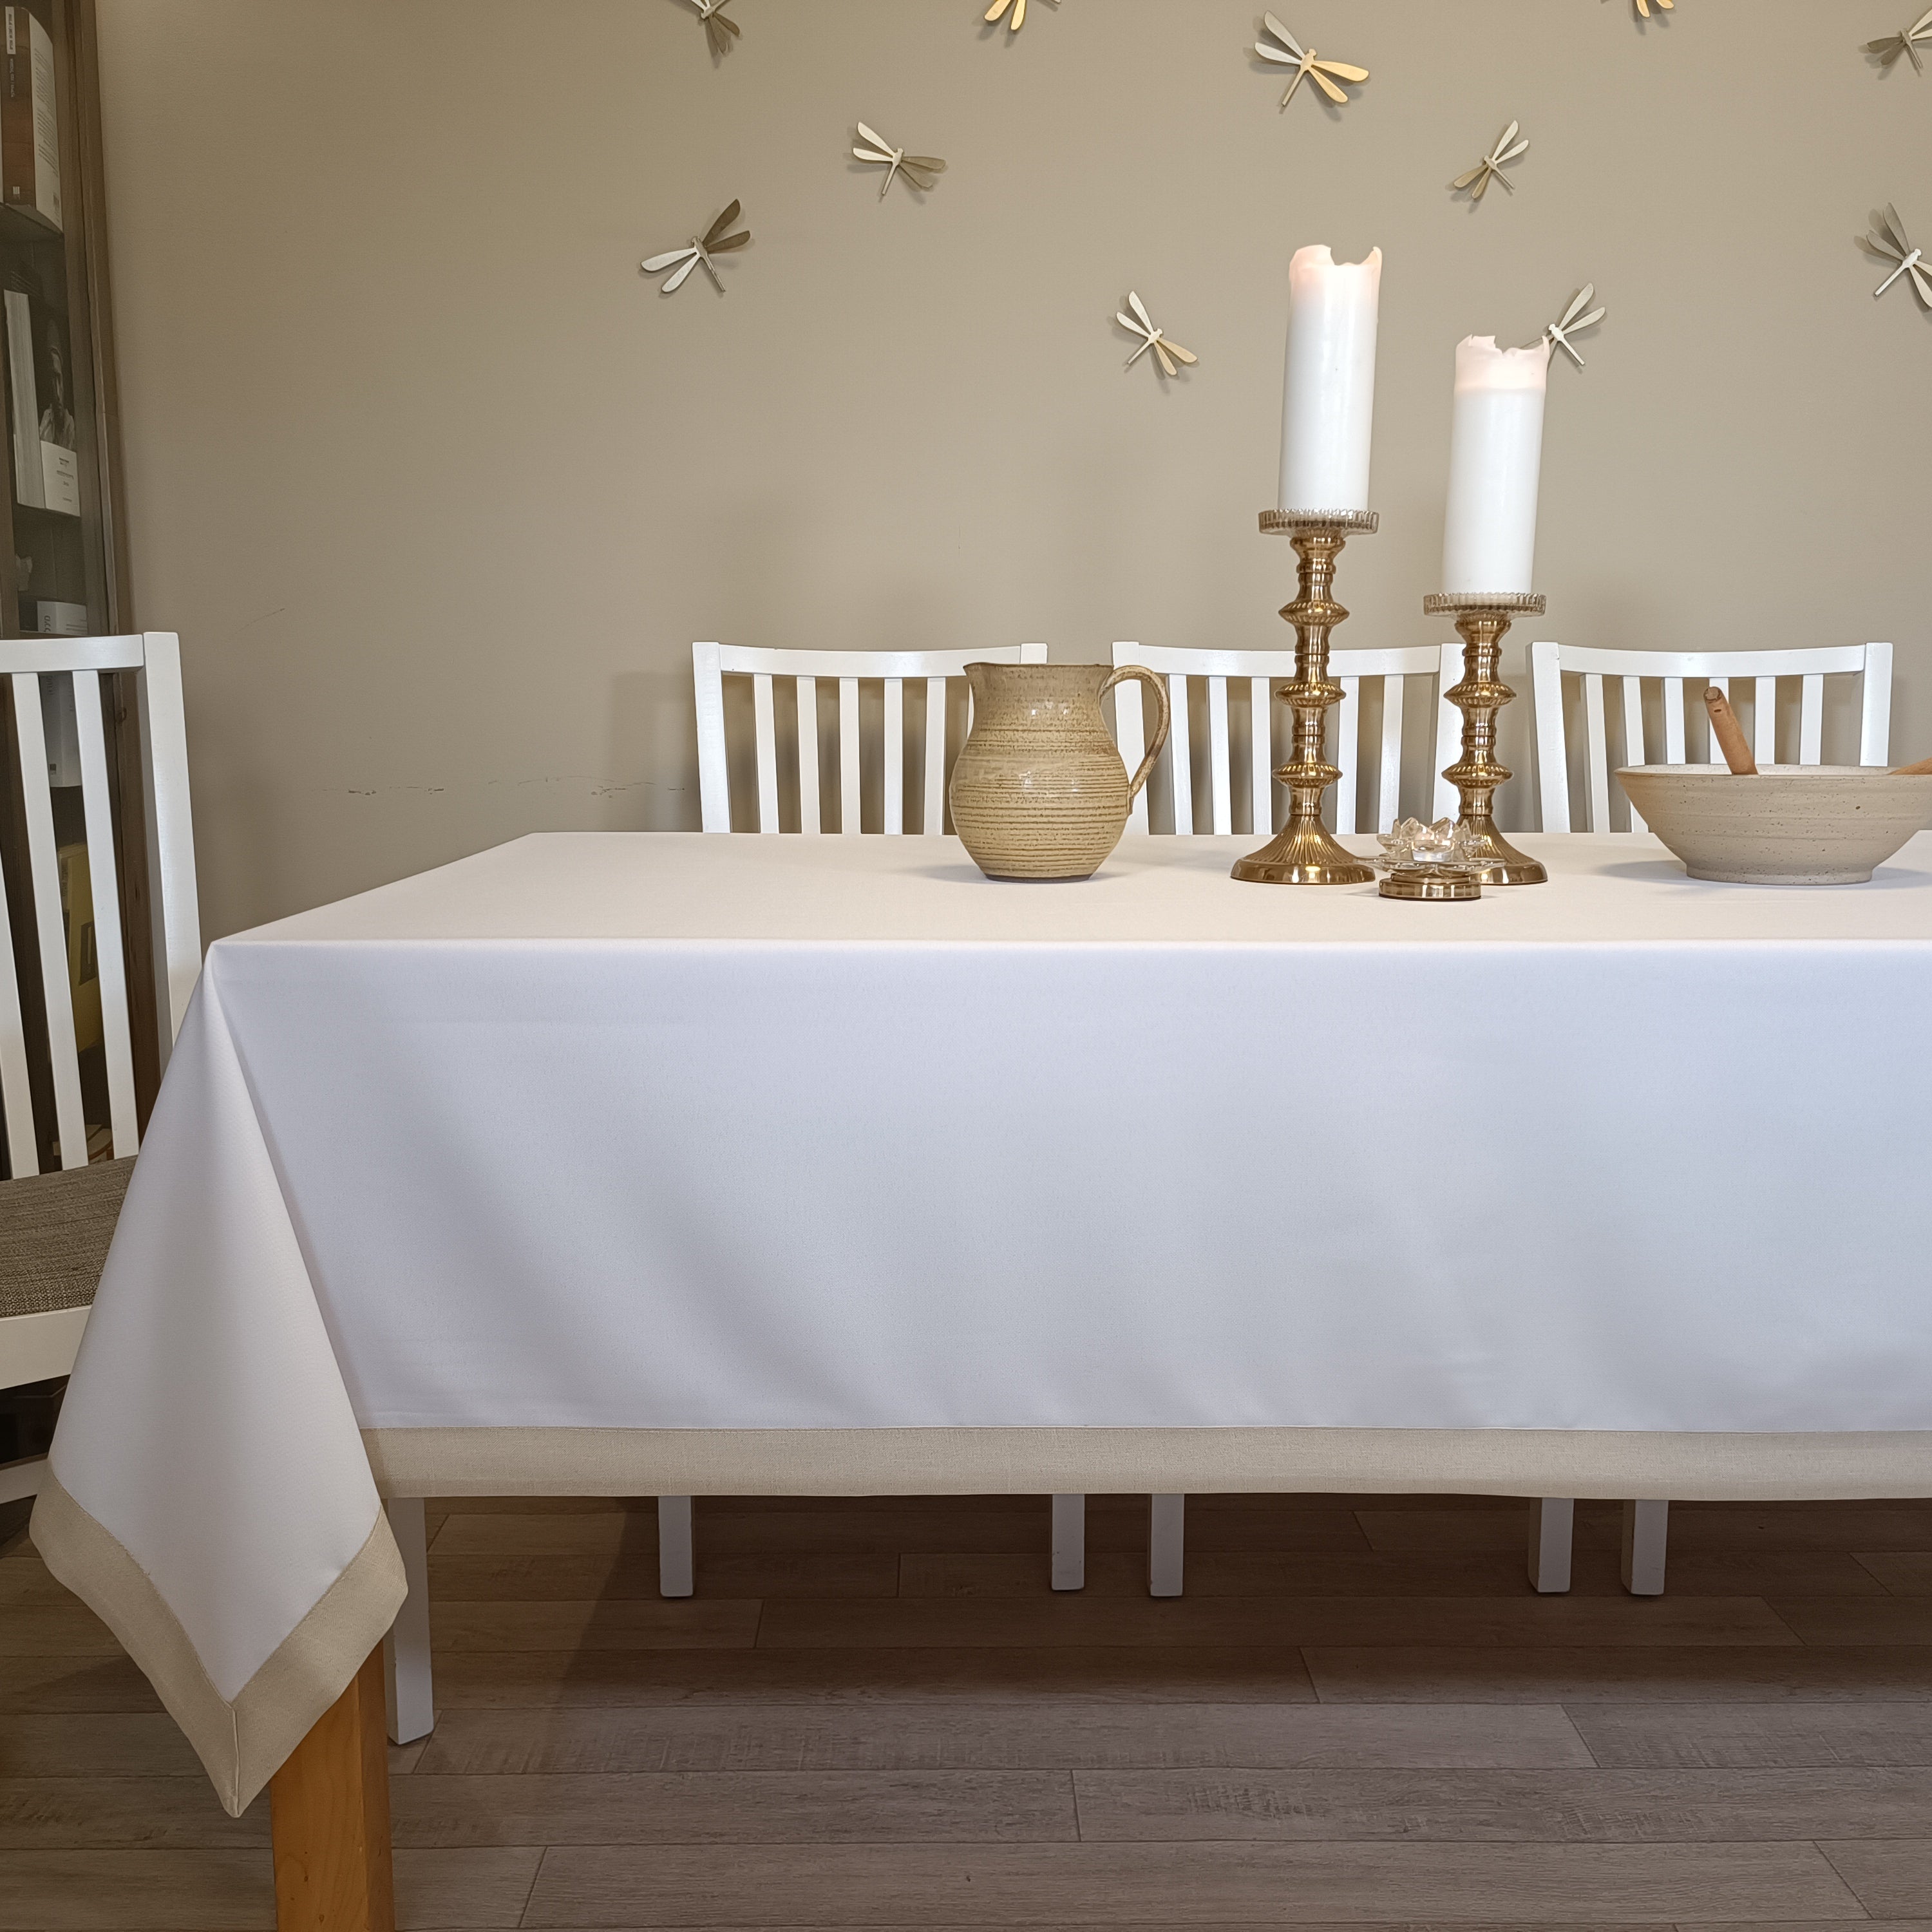 מפת שולחן לבנה של אורנה קורנגולד - ארוג לבן+מסגרת